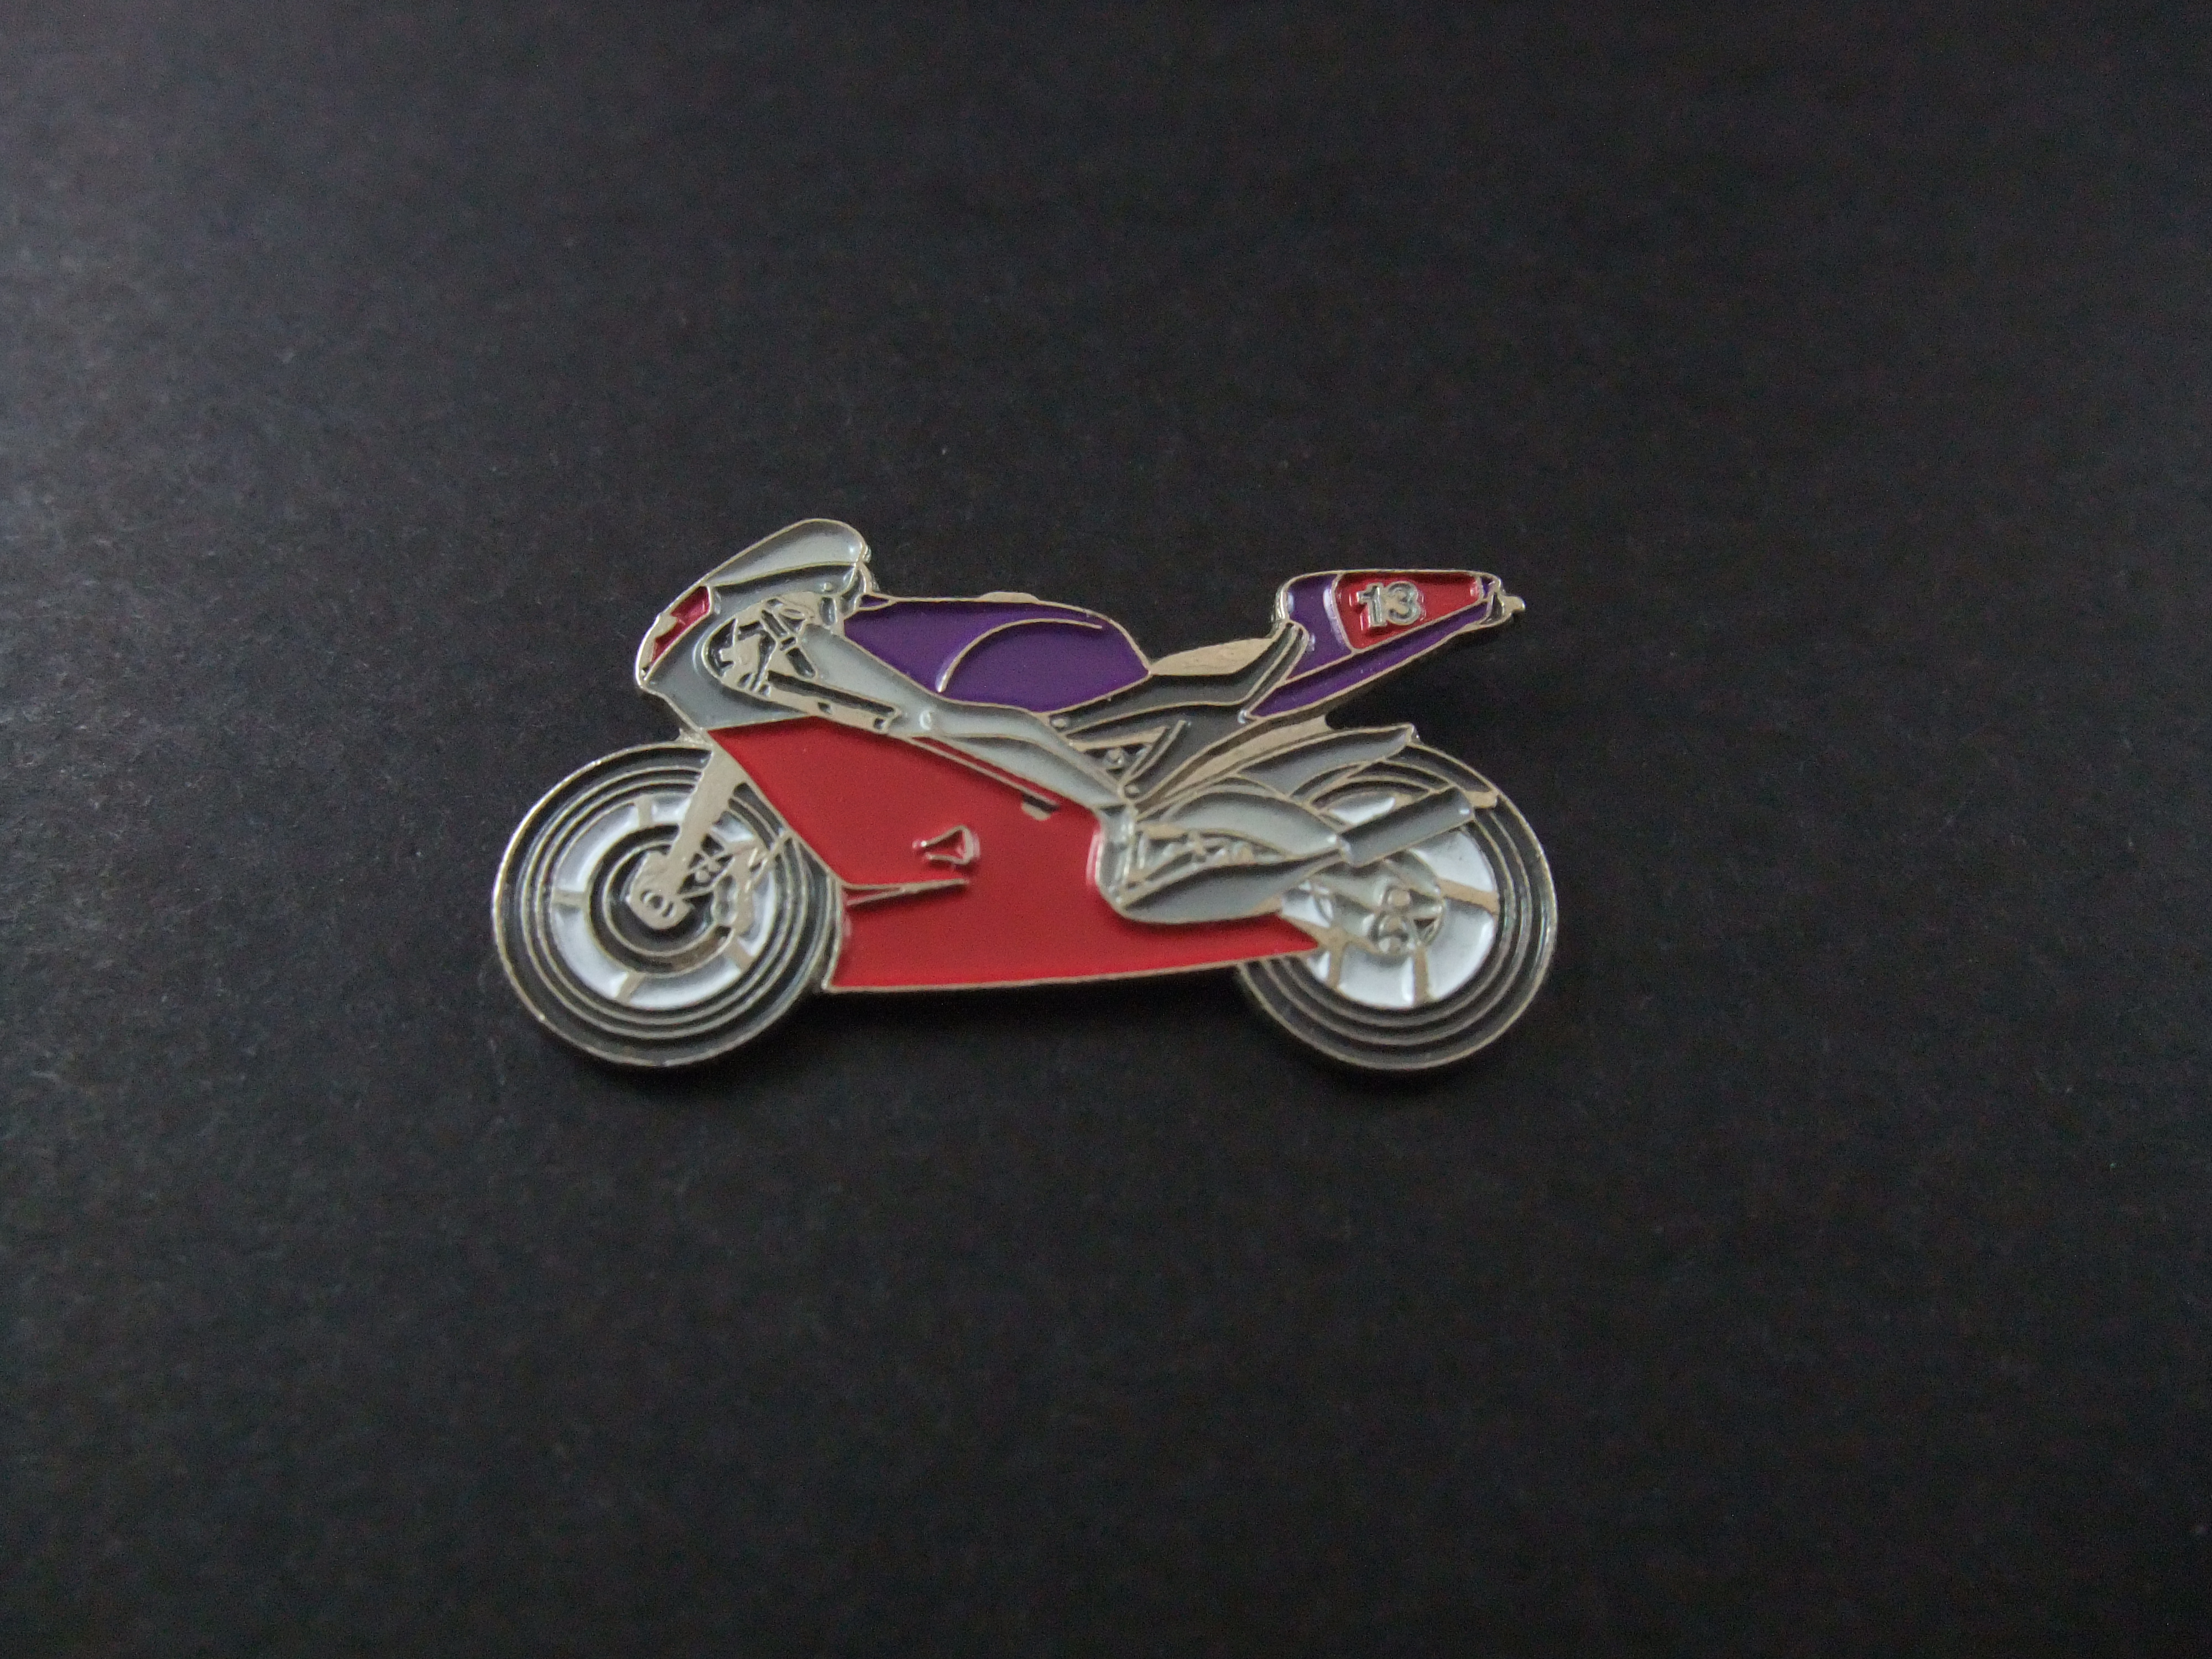 Aprilia RSW-2 500 racemotorfiets jaren 90, startnummer 13, rood-paars